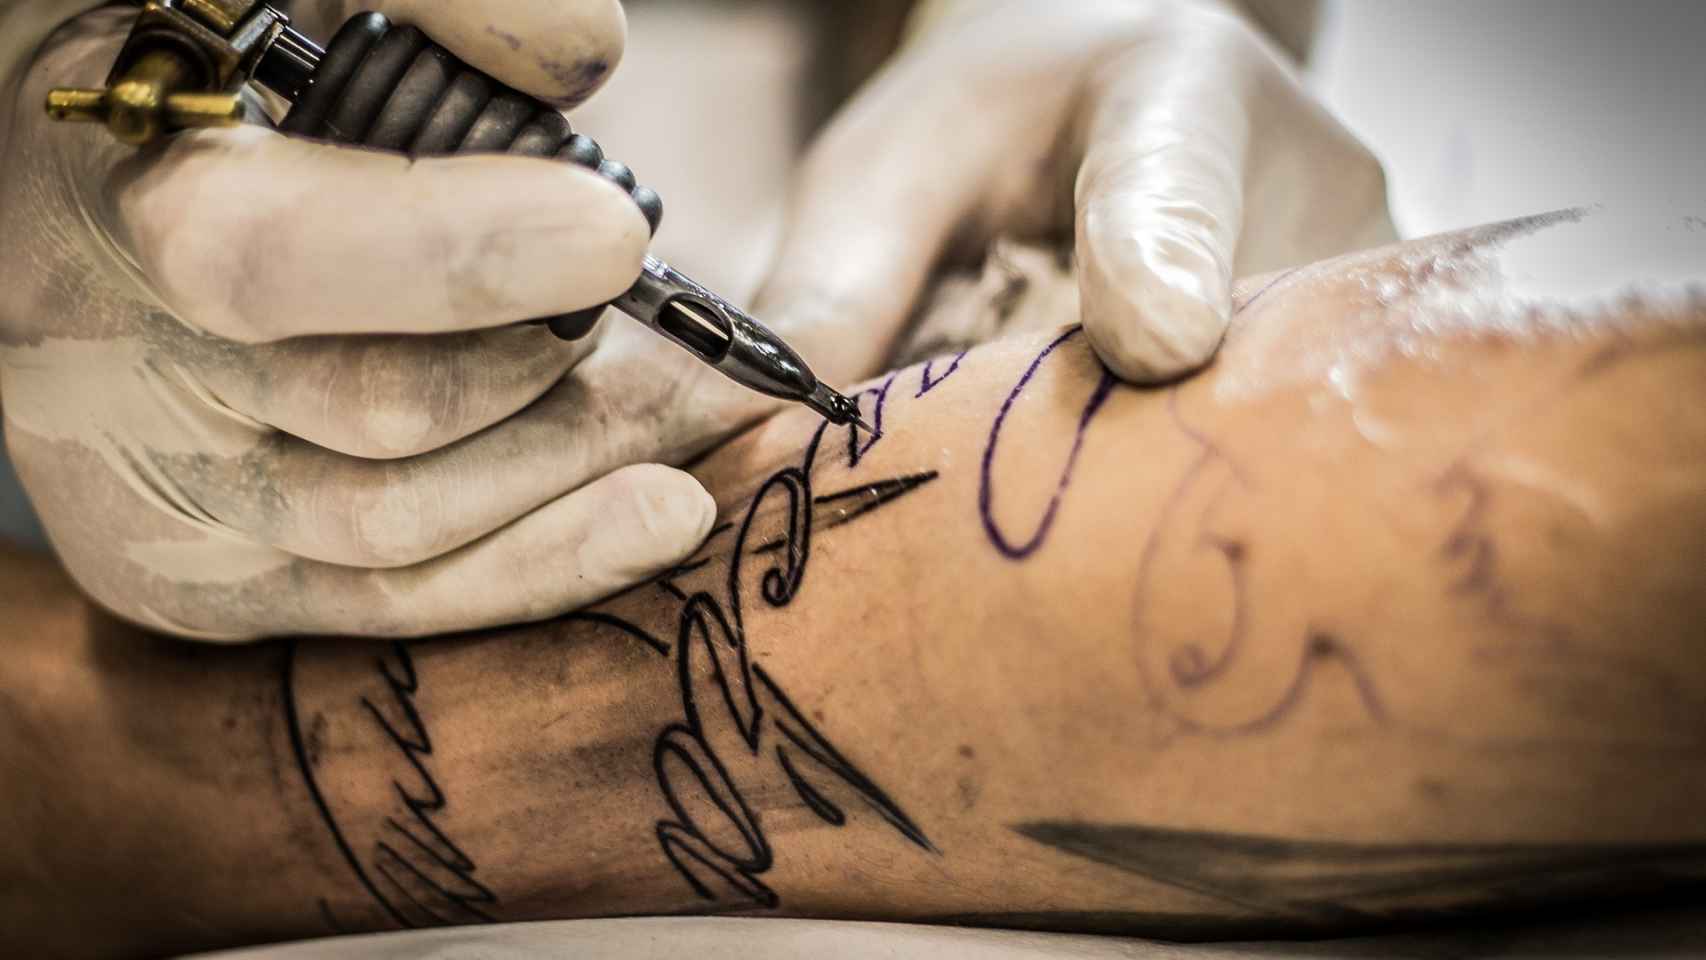 El peligro de los tatuajes en casa: "Las medidas higiénicas son una incógnita"